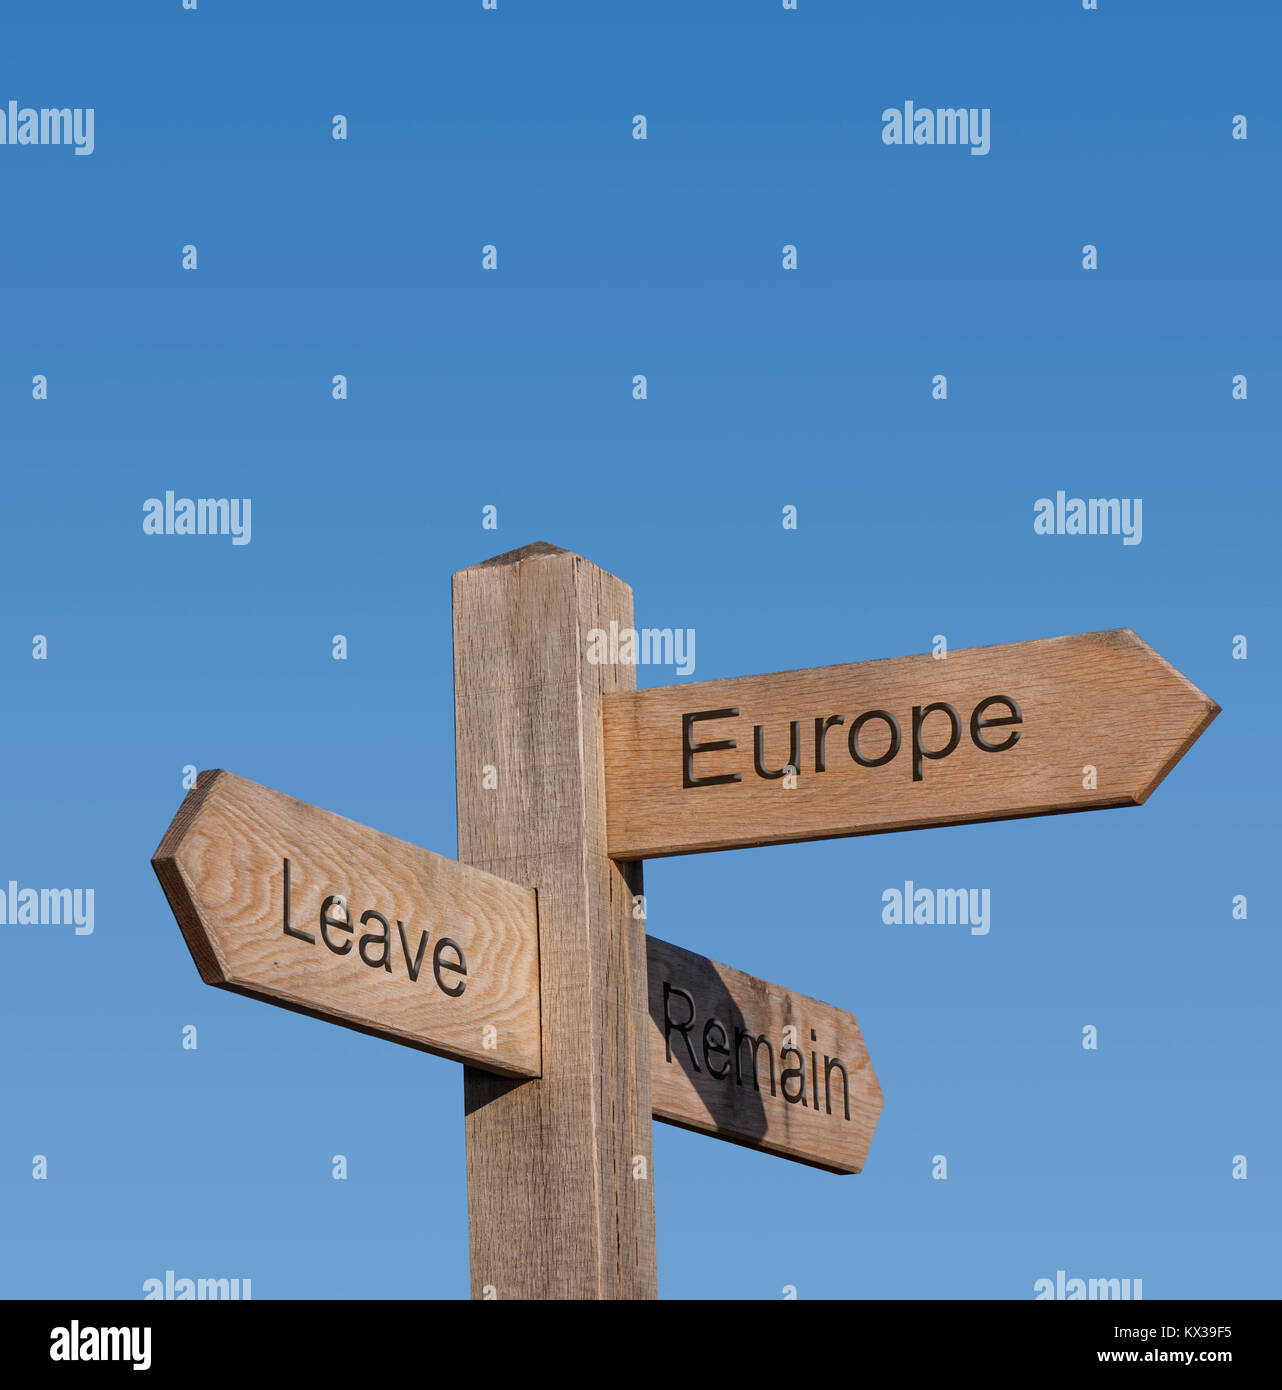 Les indications d'orientation montrant partir, rester, europe, brexit vote. Banque D'Images